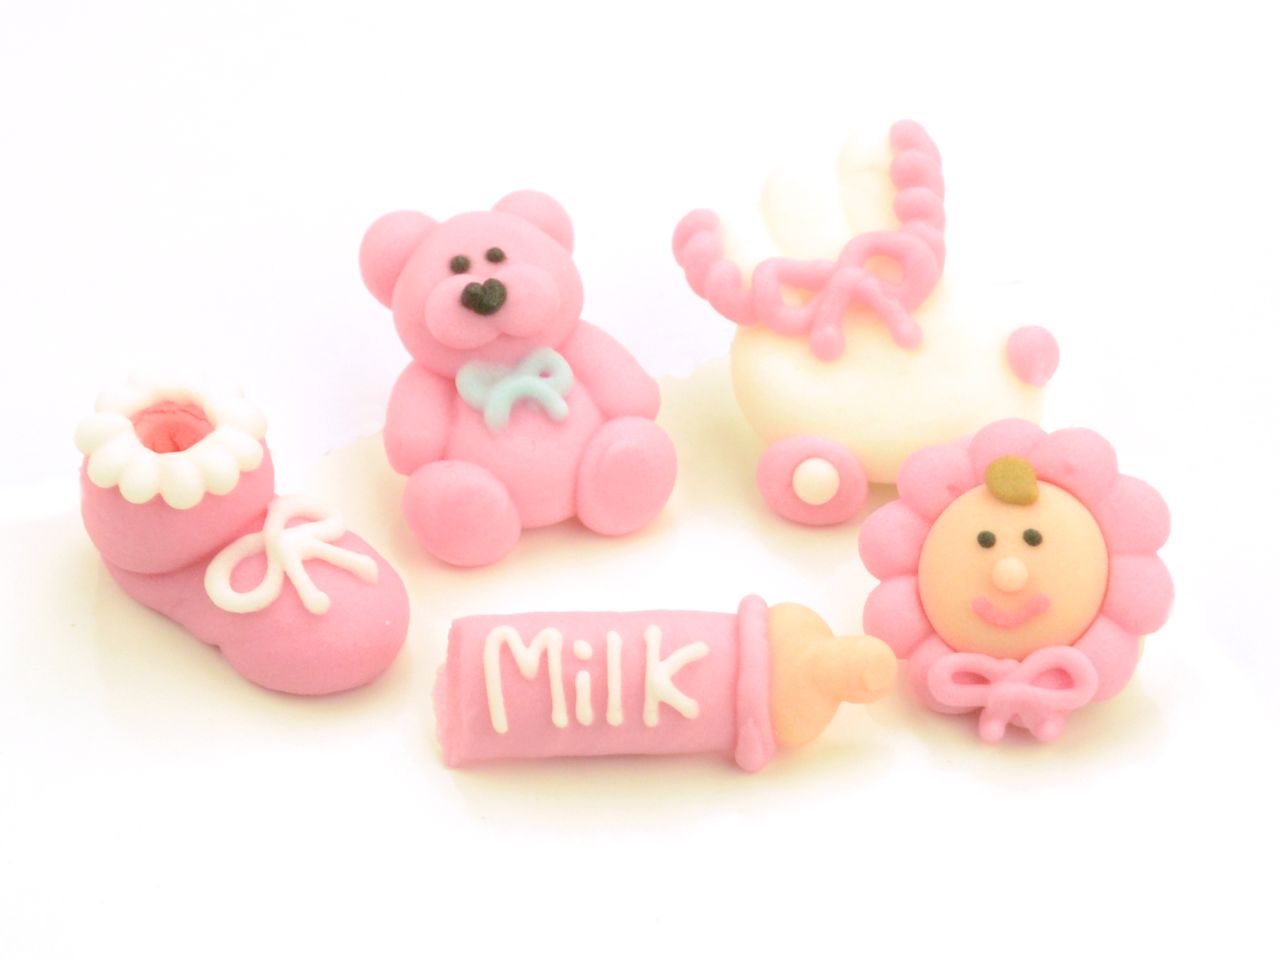 3D-Zuckerfiguren Taufe 5er-Set Pink, Babyrosa, 5 Stück à 35 x 30 x 15 mm